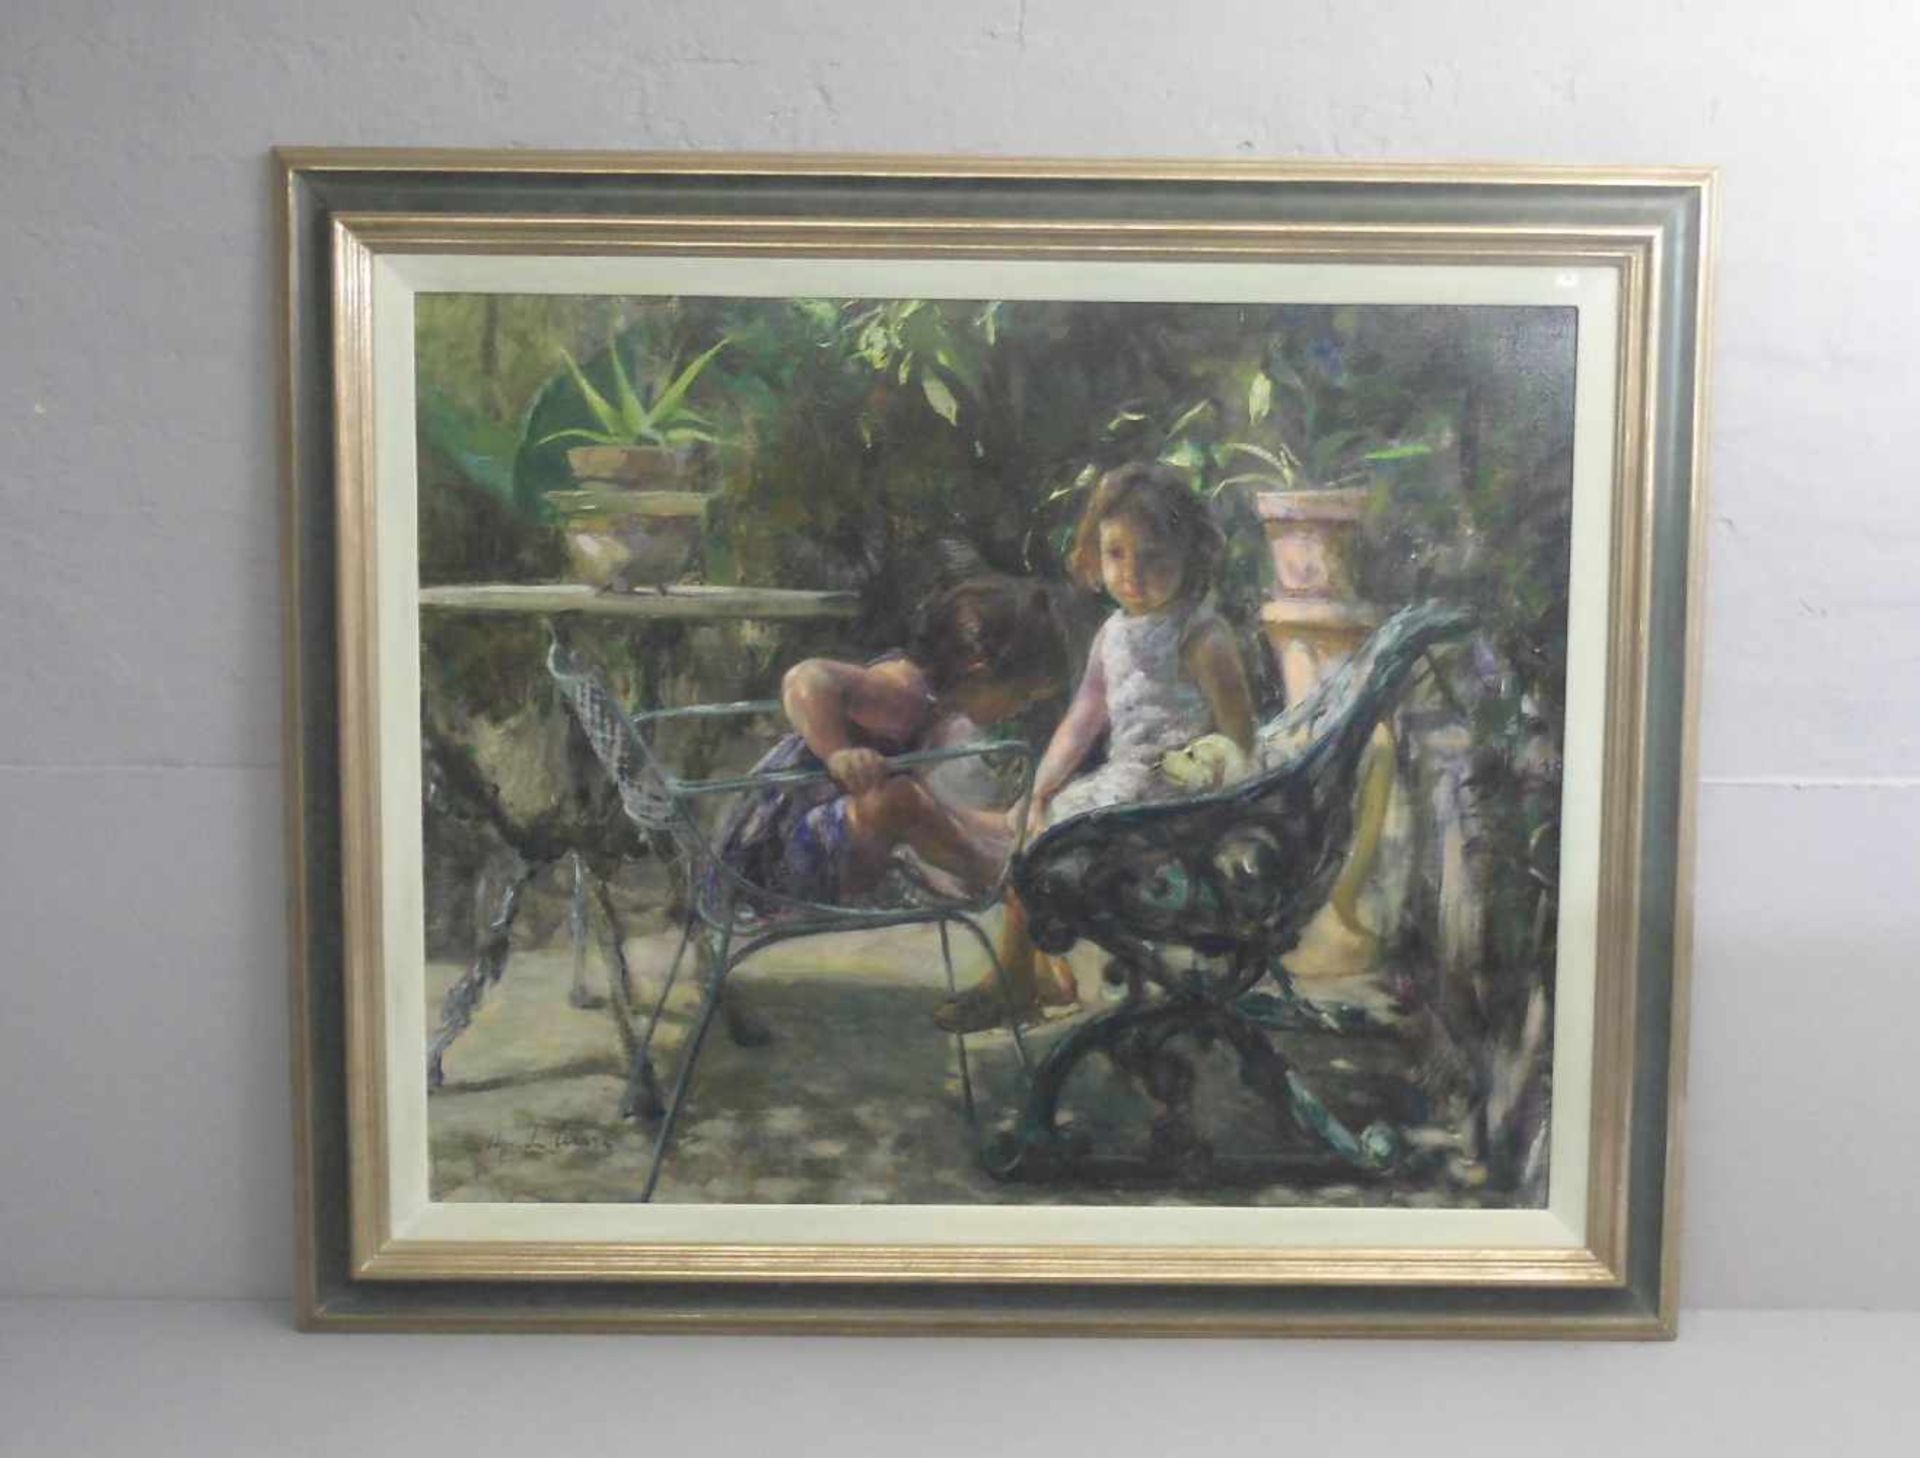 DE CESARE, UGO (geb. 1950 in Neapel), Gemälde / painting: "Zwei Mädchen und Welpe im Park", Öl auf